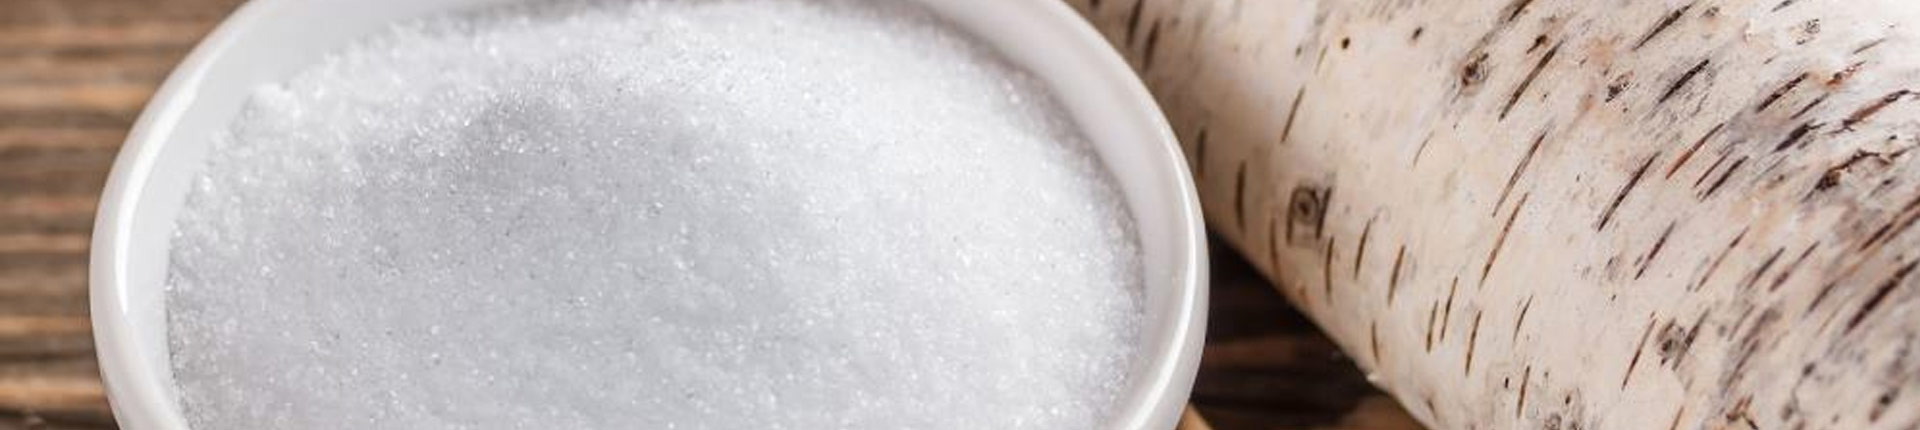 Ksylitol - właściwości, zastosowanie. Czy dodawać cukier brzozowy do posiłków?